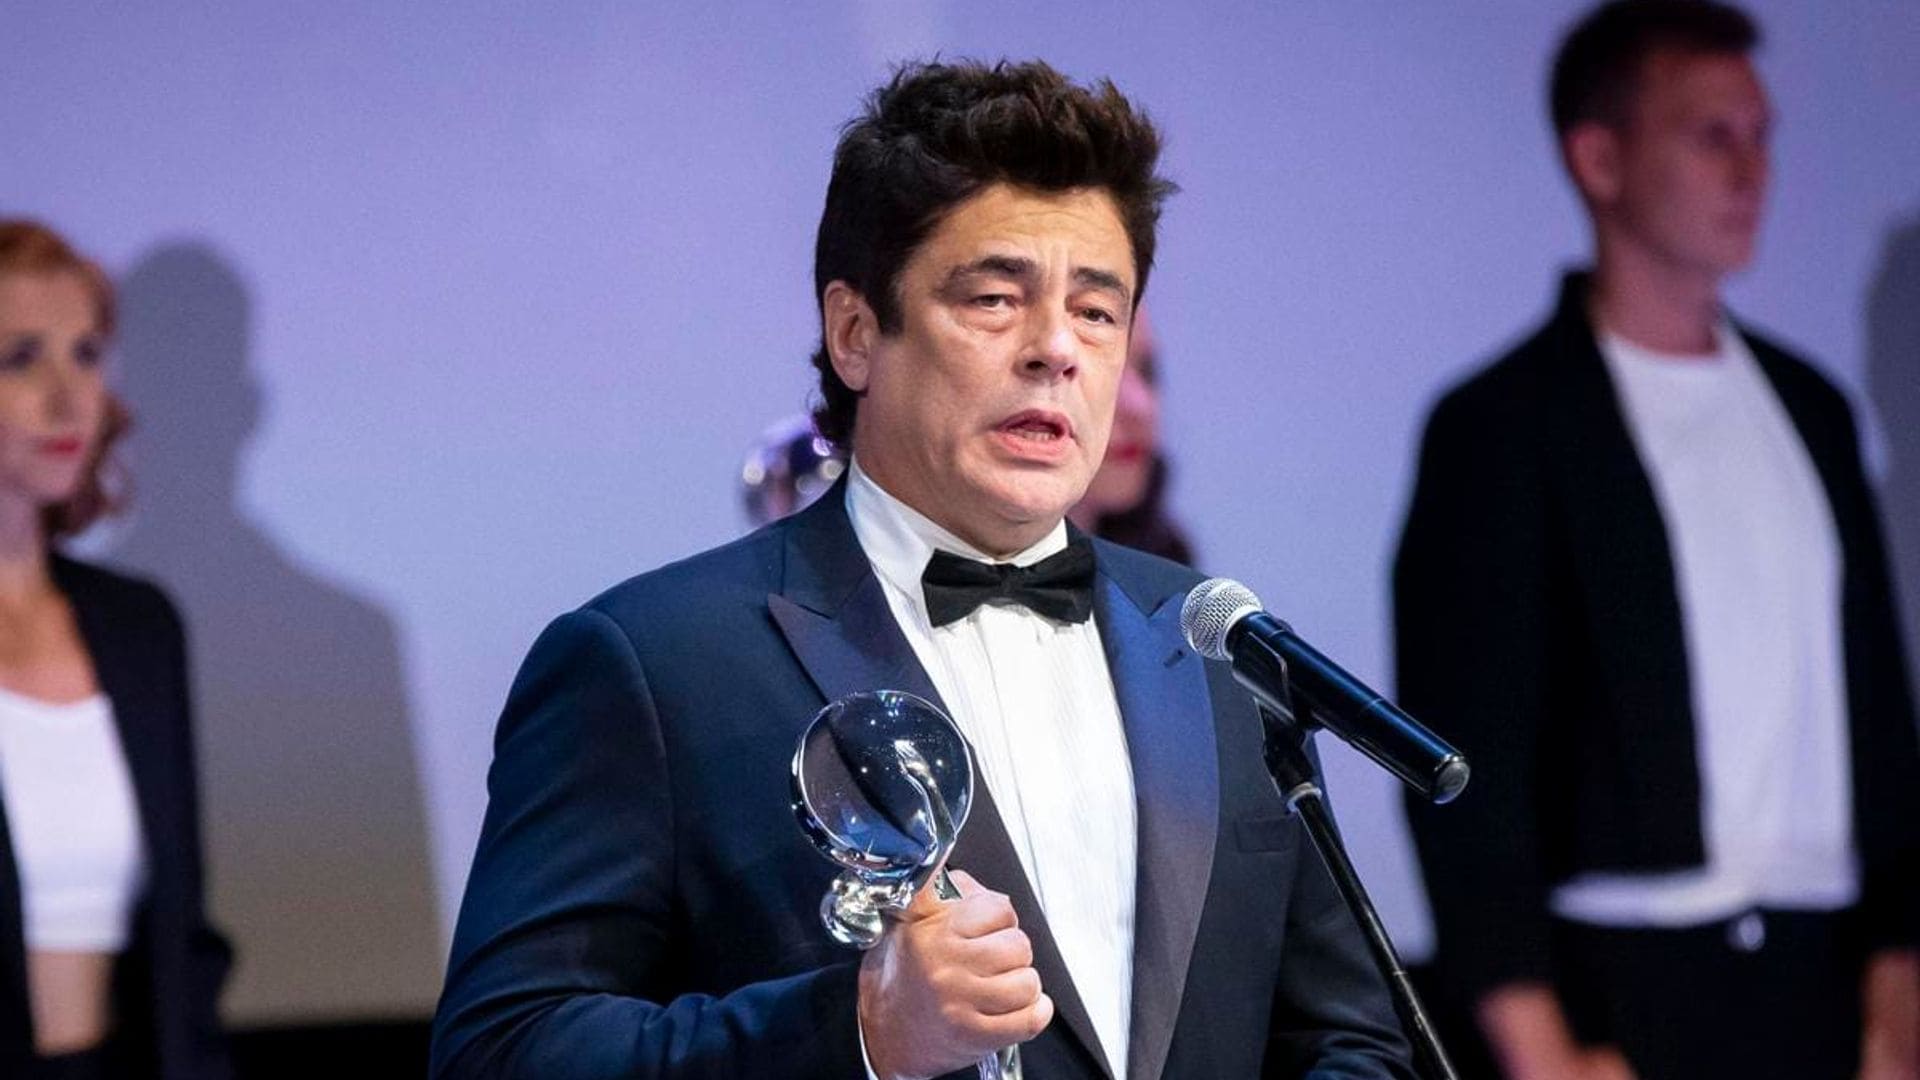 Benicio del Toro to be awarded the Platino Honorary Award